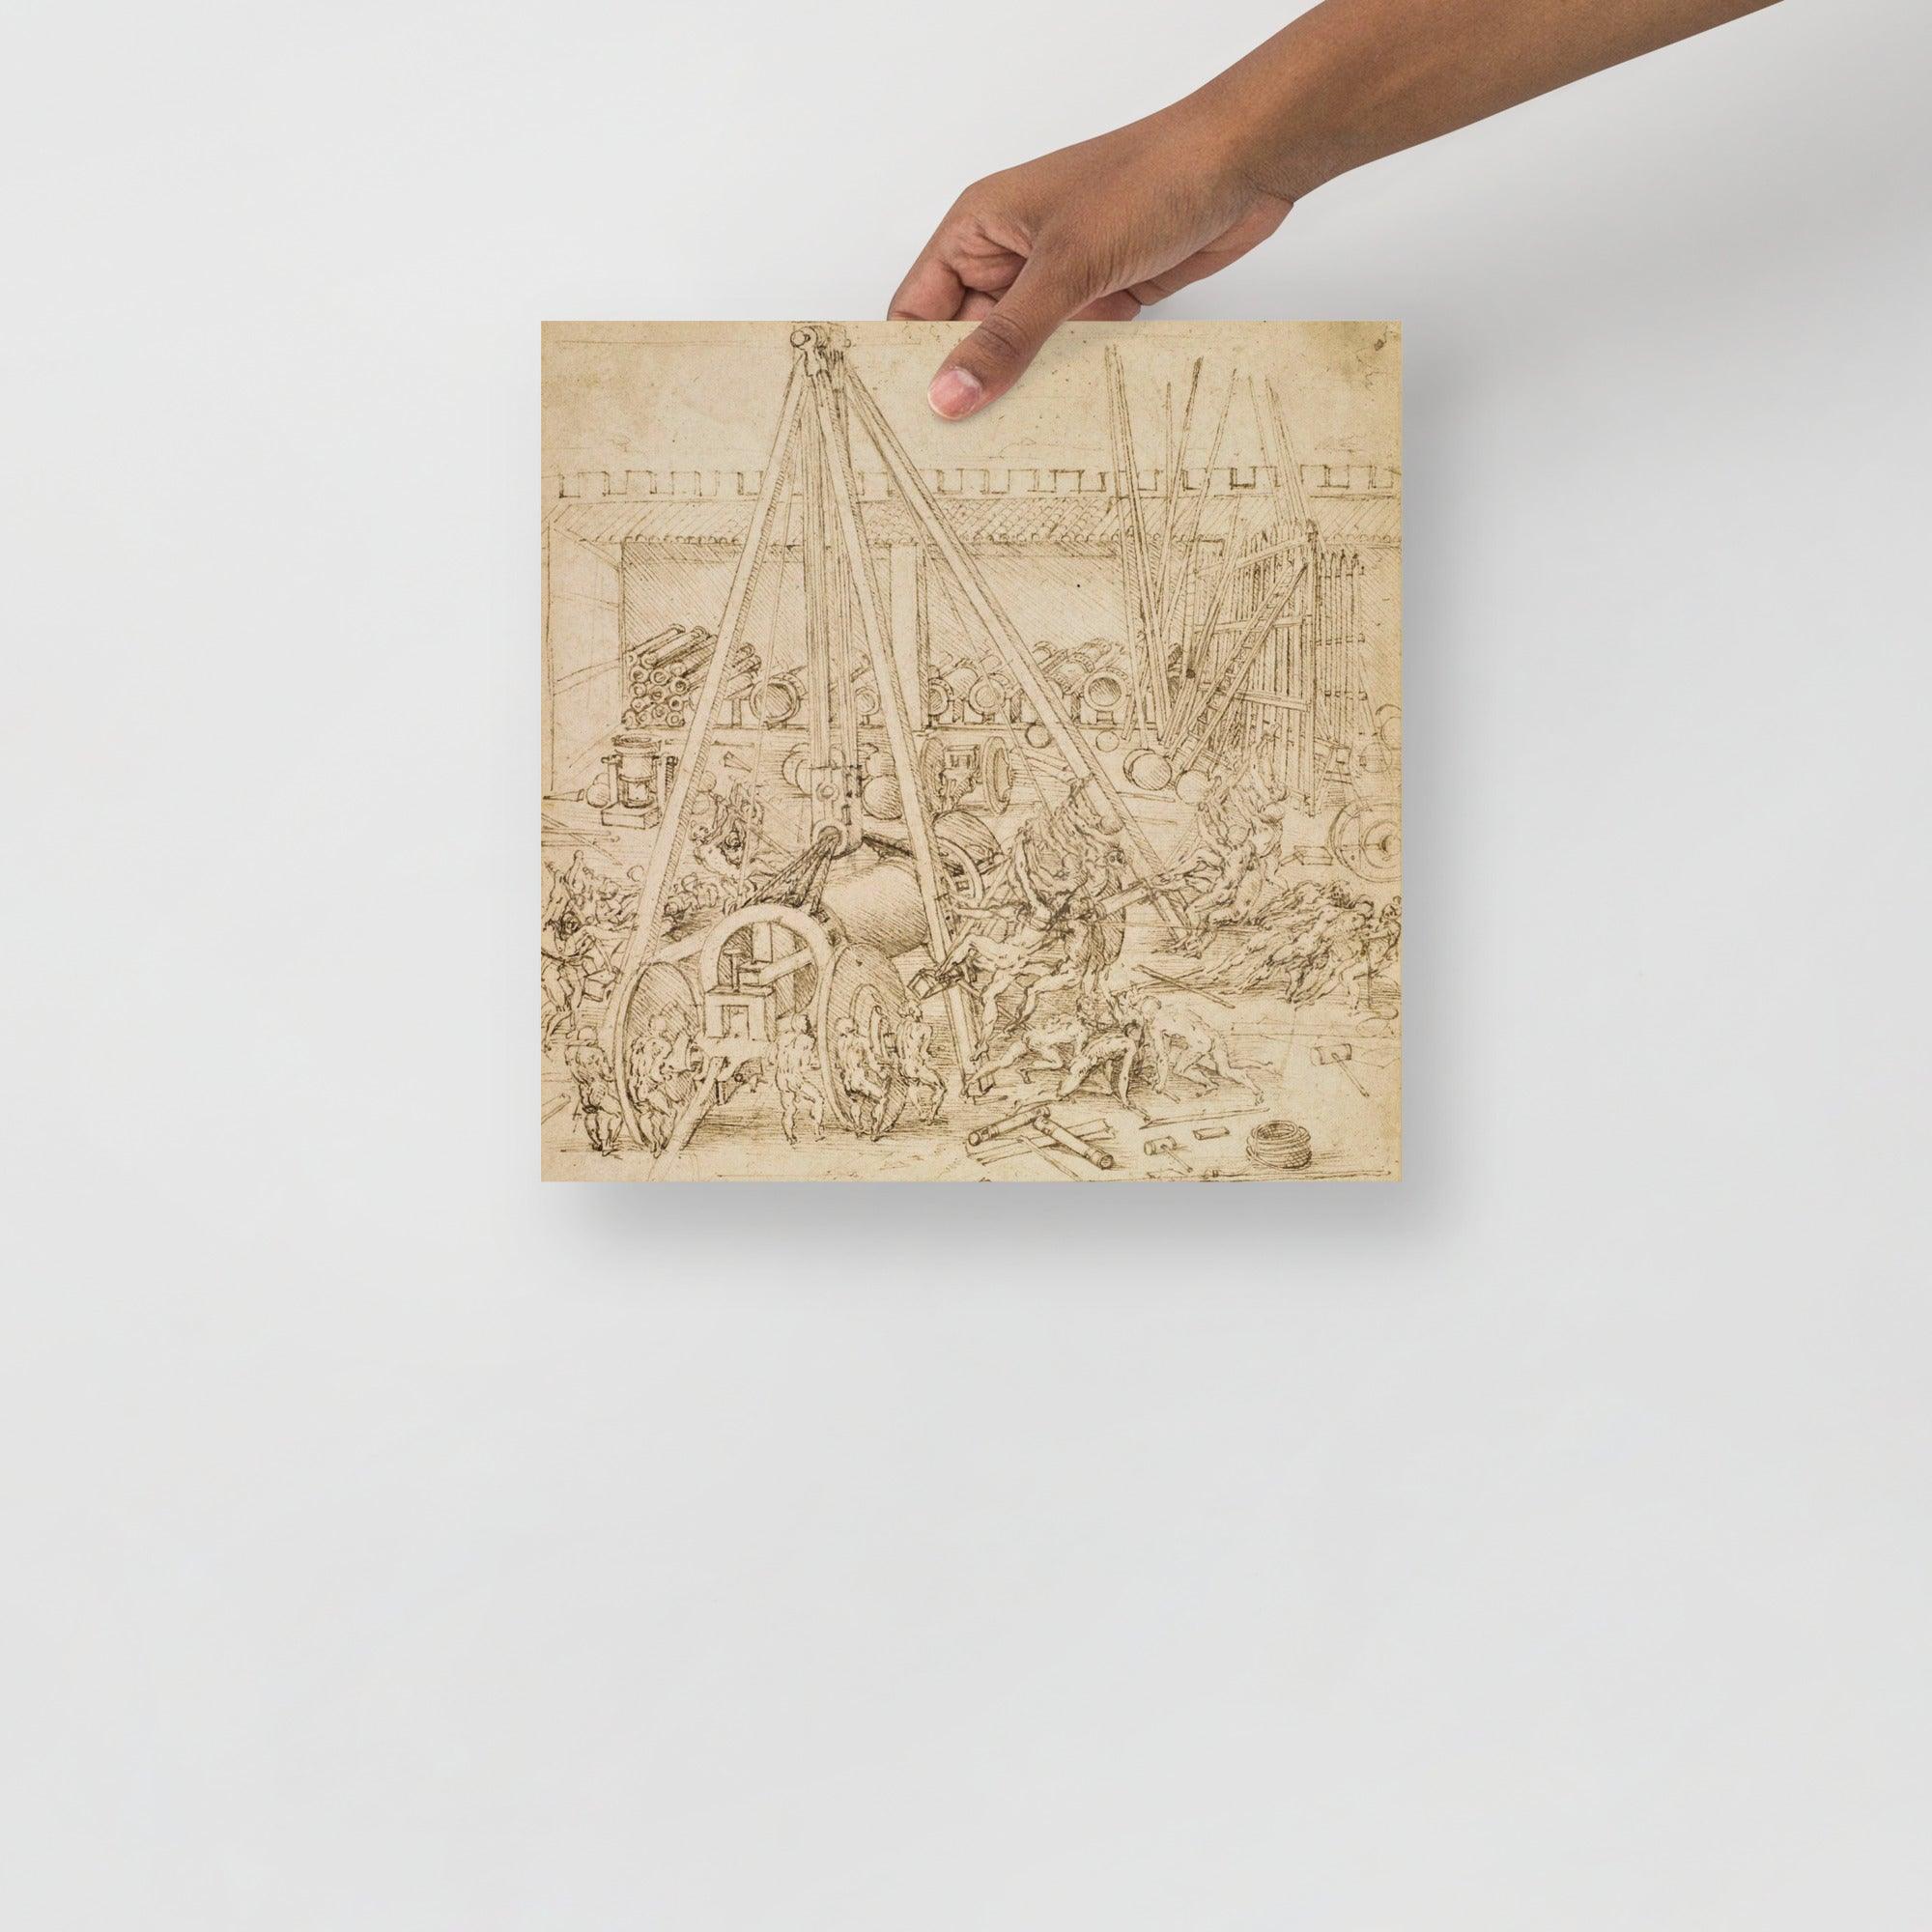 A Scene in an Arsenal by Leonardo Da Vinci poster on a plain backdrop in size 12x12”.